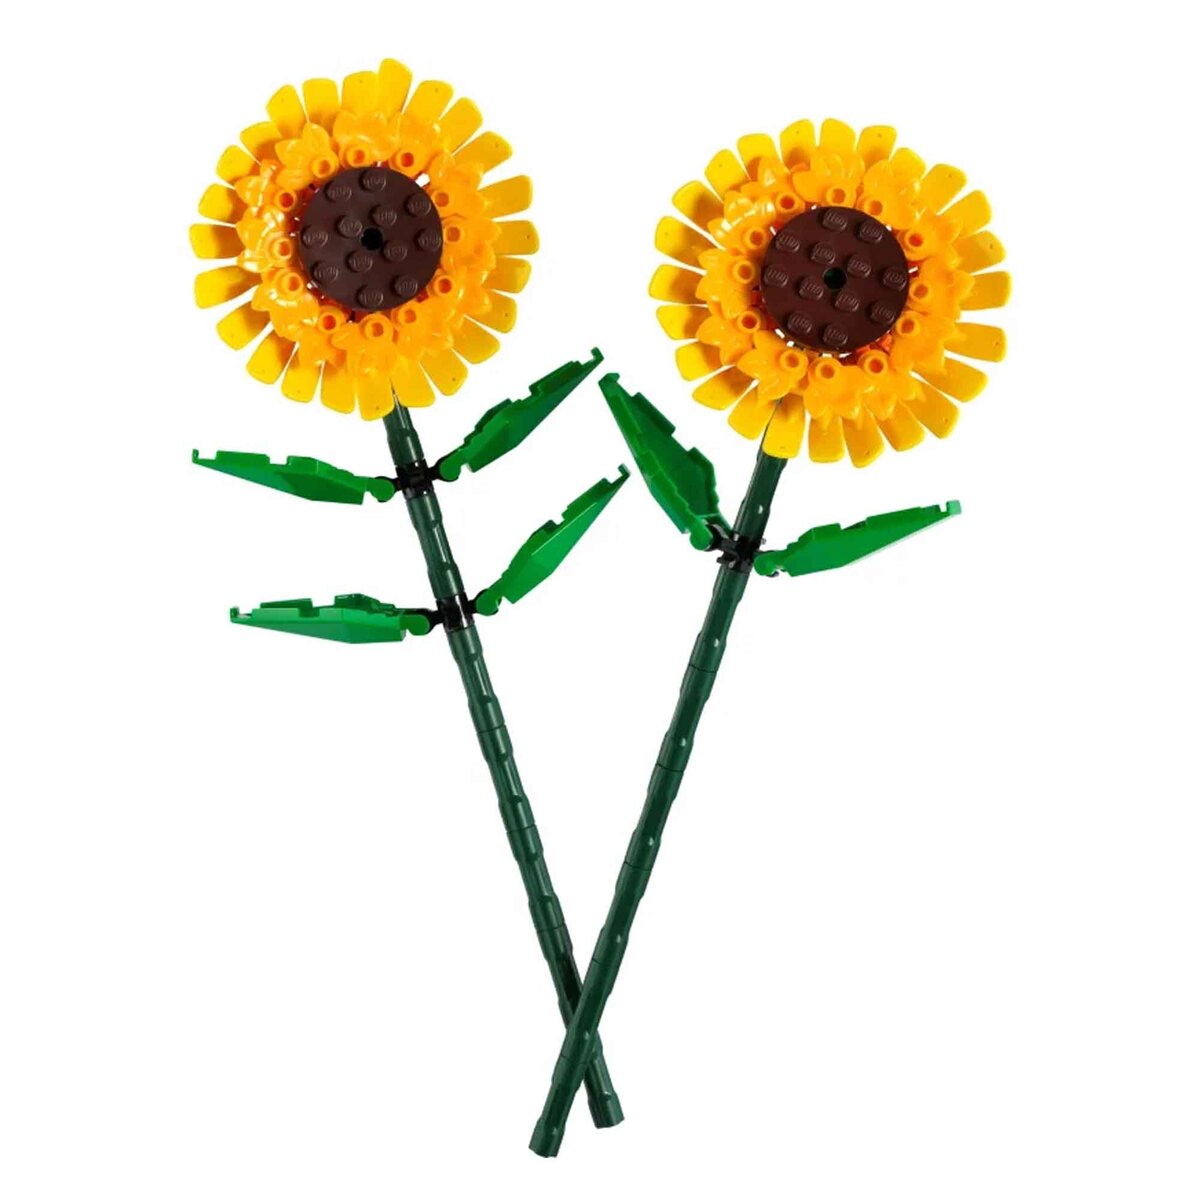 Lego Iconic Sunflowers, 4 pcs, 40524